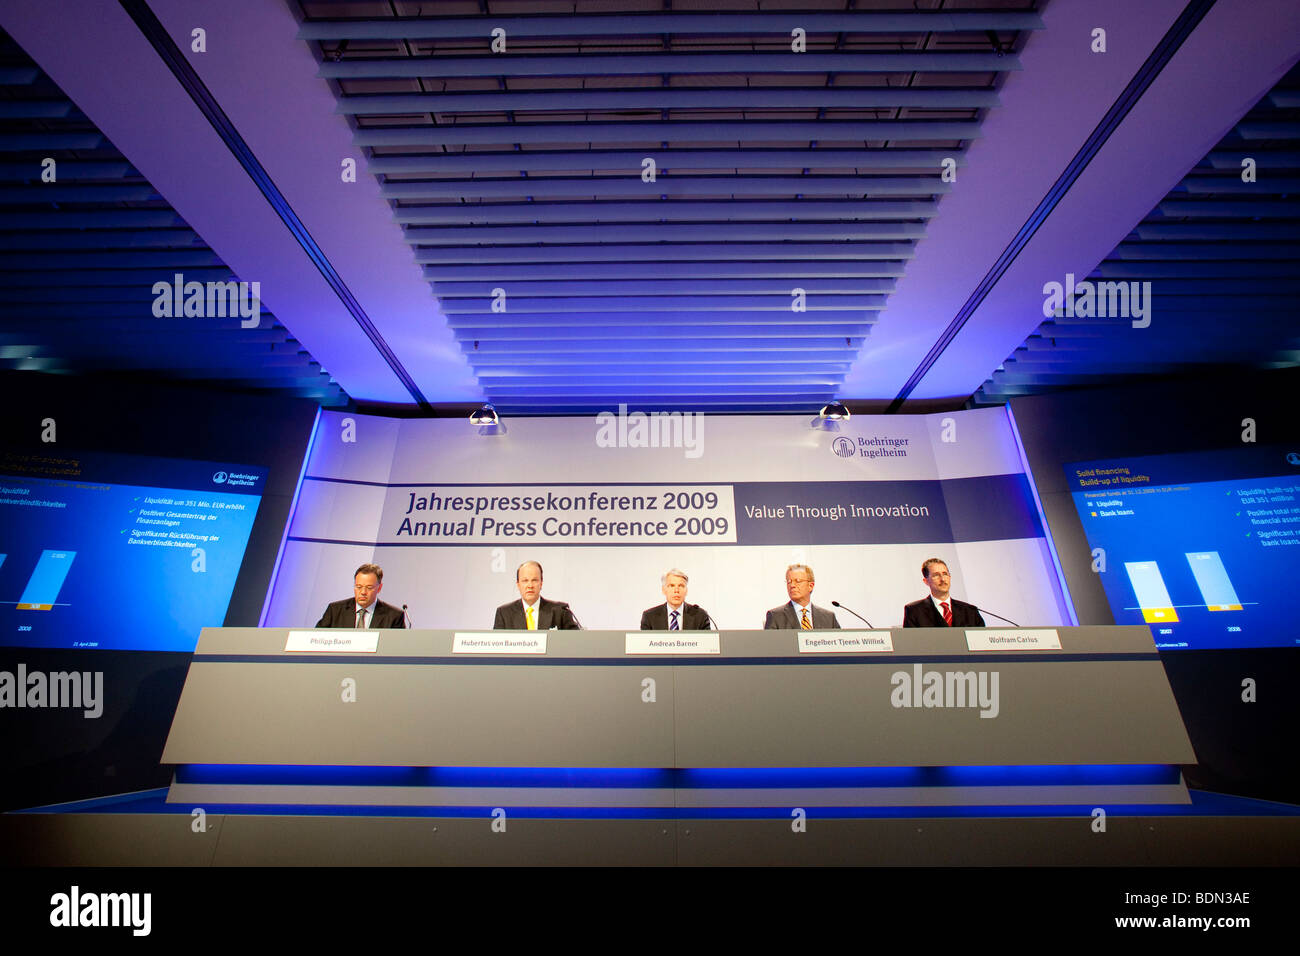 Philip Baum, portavoz de la empresa, a la izquierda, Hubertus von Baumbach, segunda desde la izquierda, CFO, Andreas Barner, centro, Presidente, Engelbert Tj Foto de stock